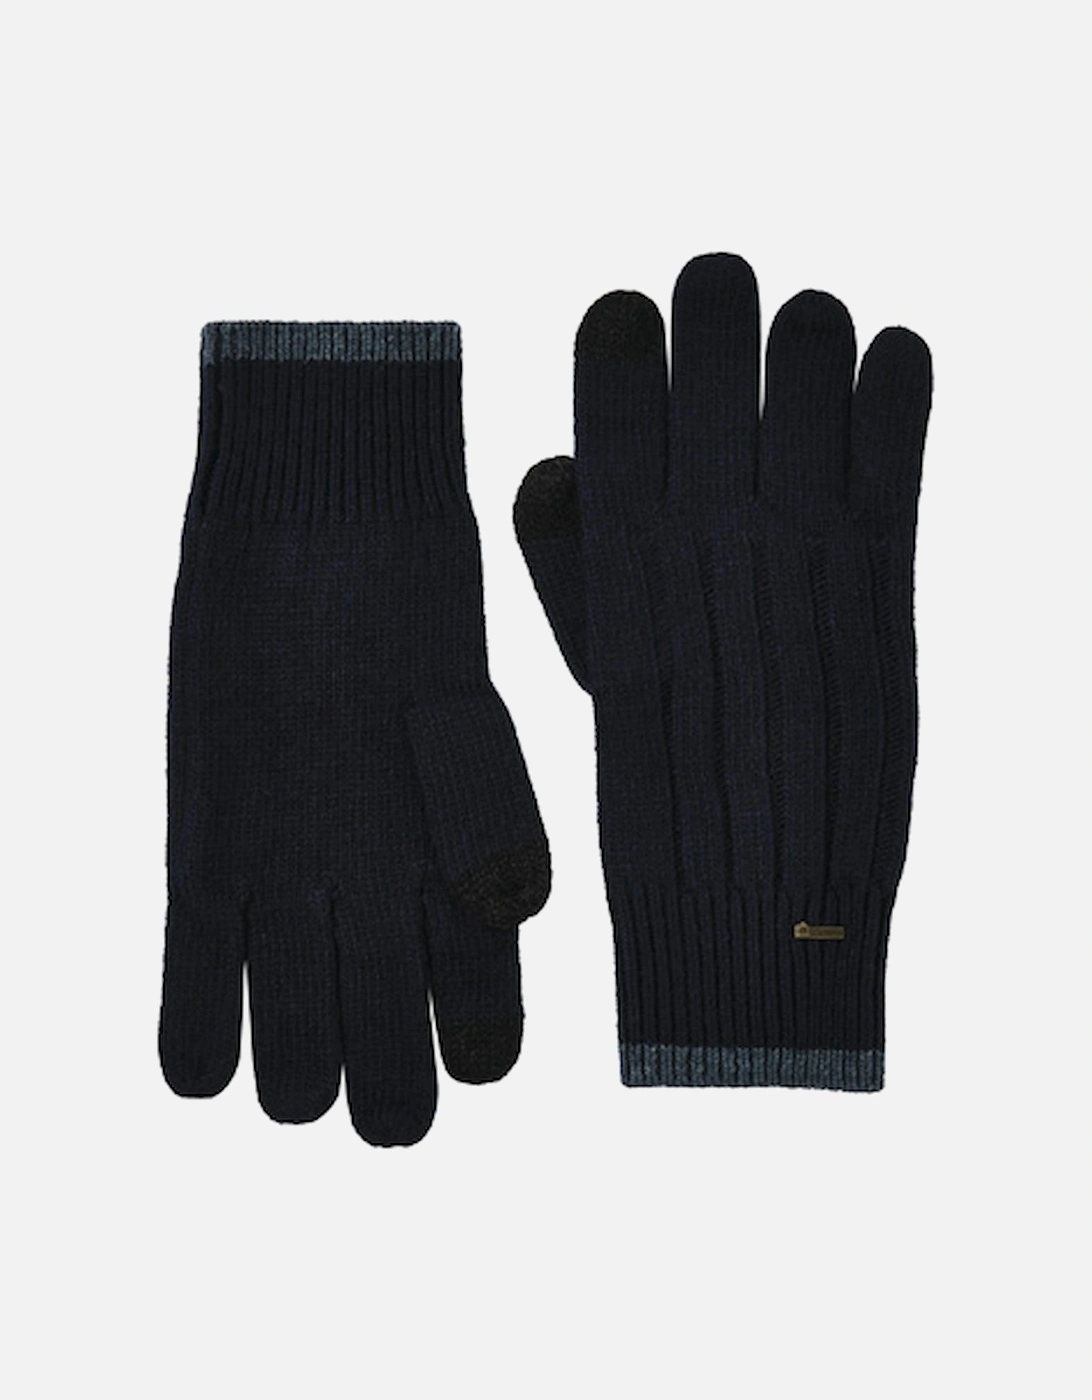 Marsh Gloves M Navy, 2 of 1